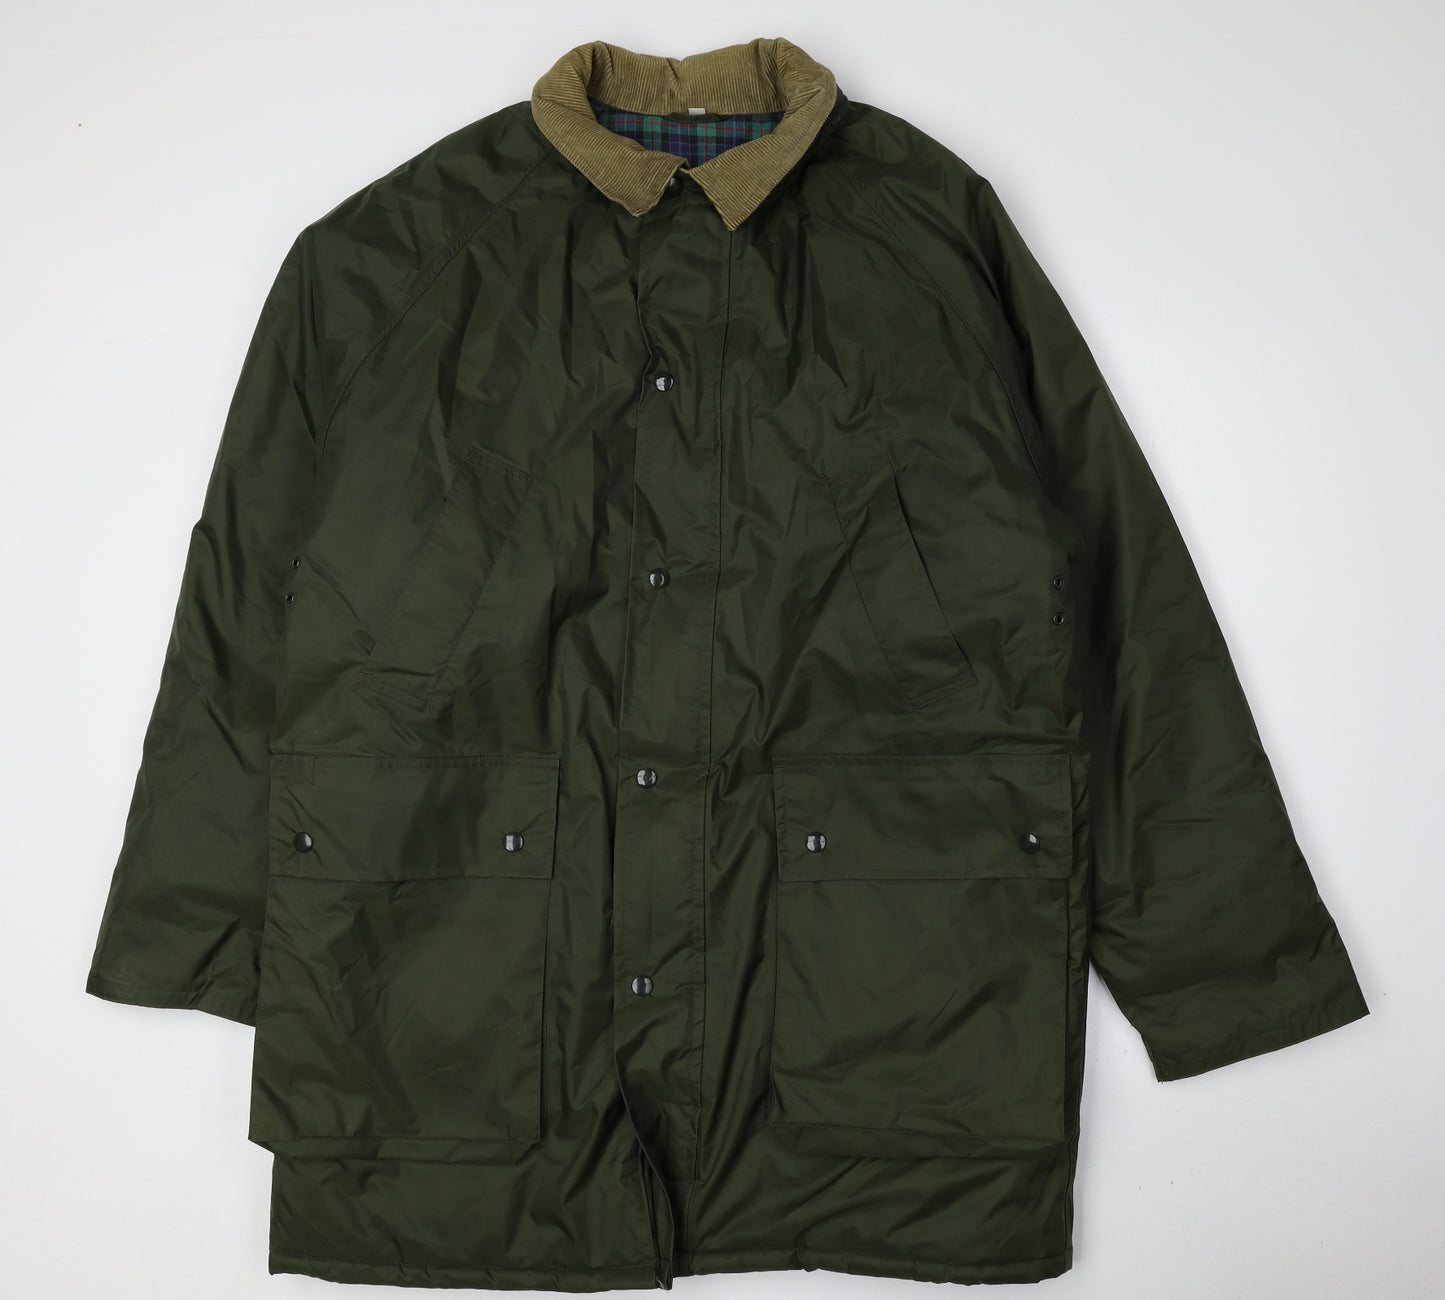 Preworn Mens Green Overcoat Coat Size M Snap